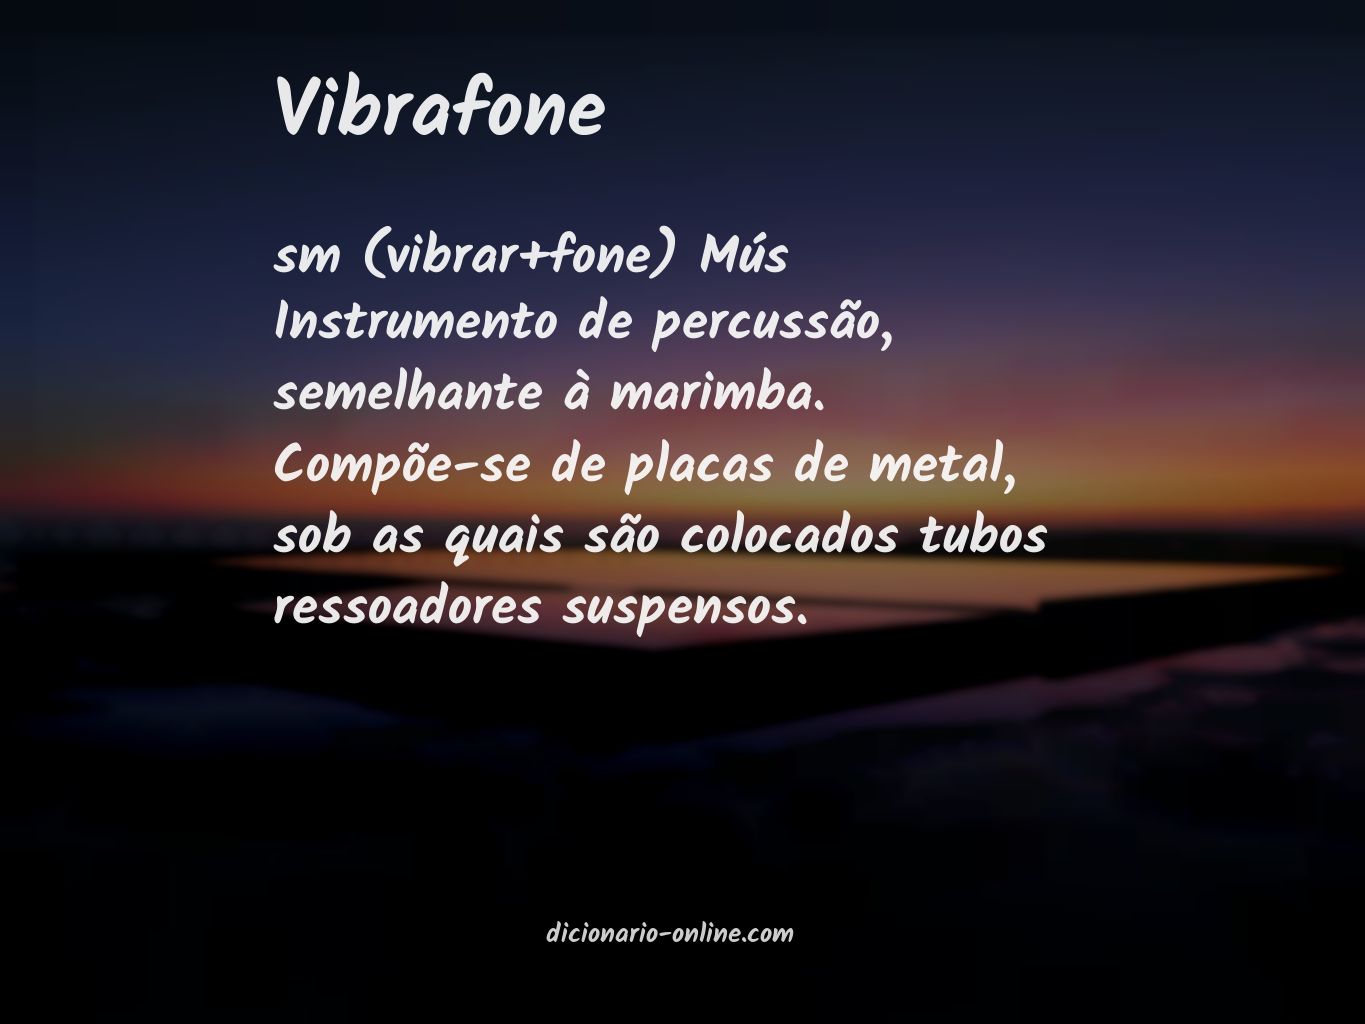 Significado de vibrafone